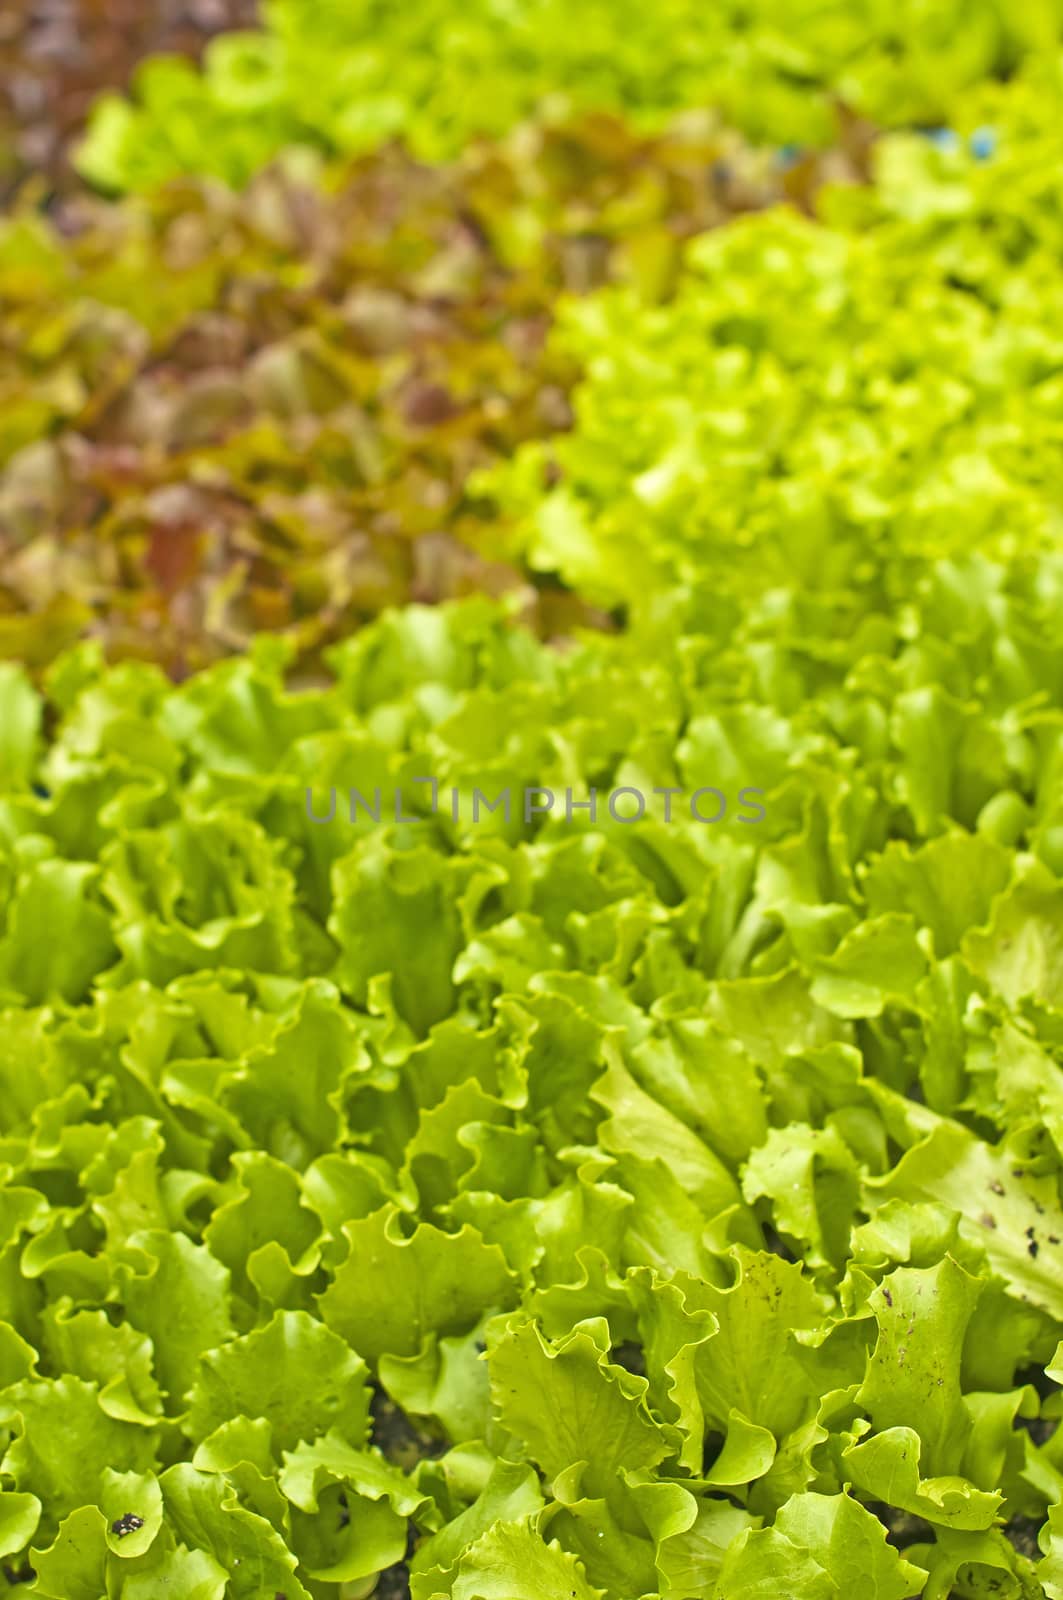 seedlings of salad by Jochen